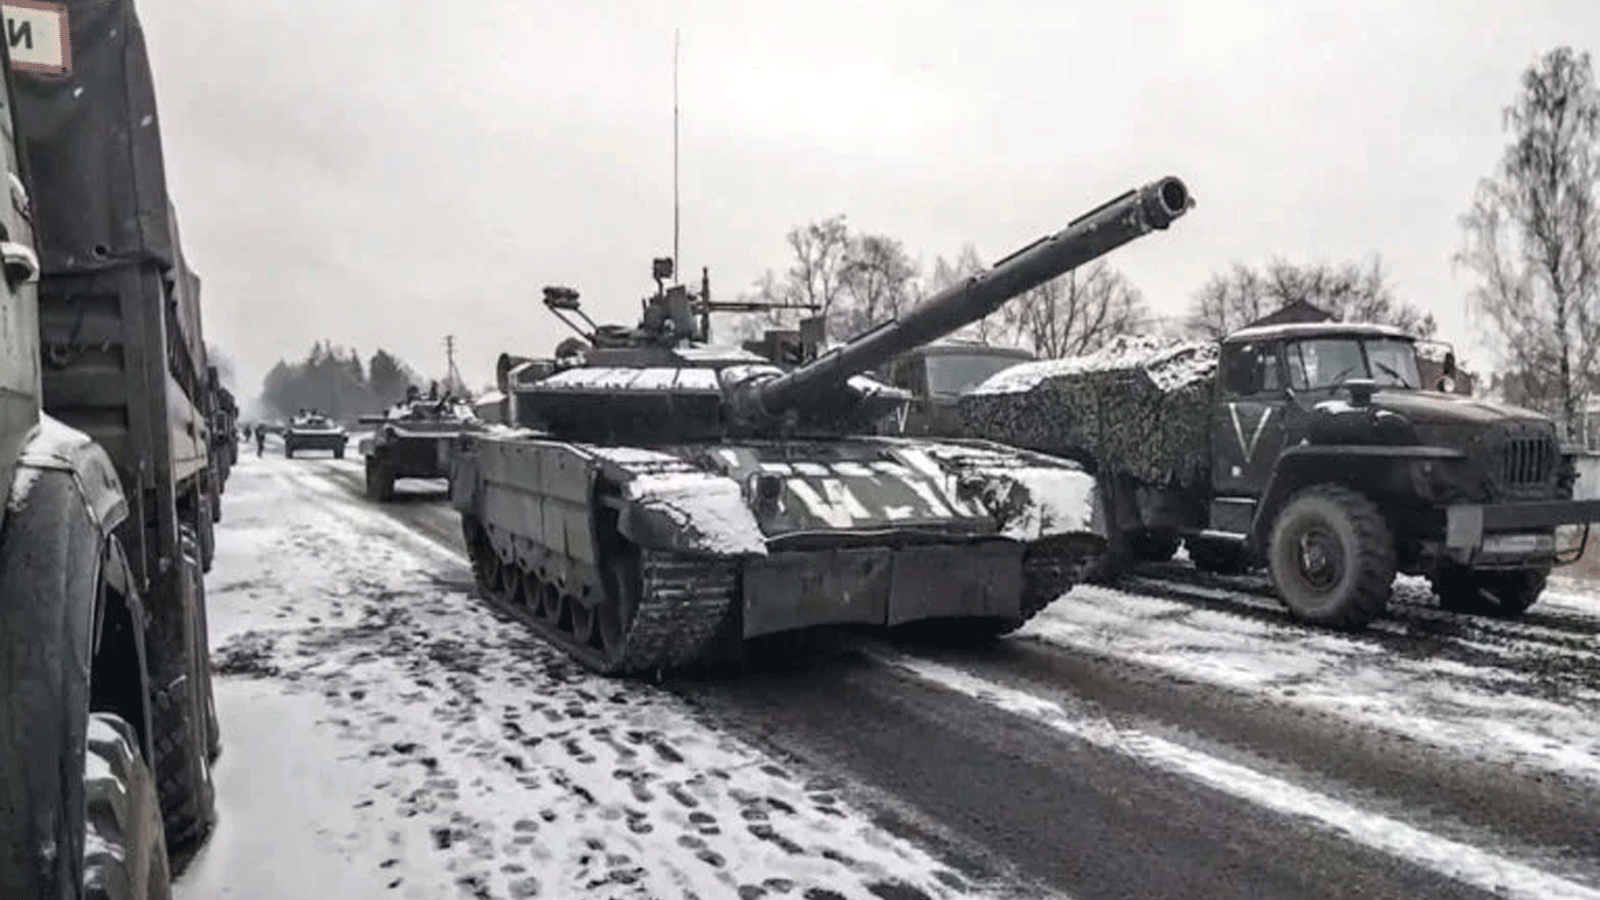  صورة نشرتها وزارة الدفاع الروسية في 7 آذار\ مارس 2022 تُظهِر تقدمًا لوحدة دبابات روسية في منطقة كييف